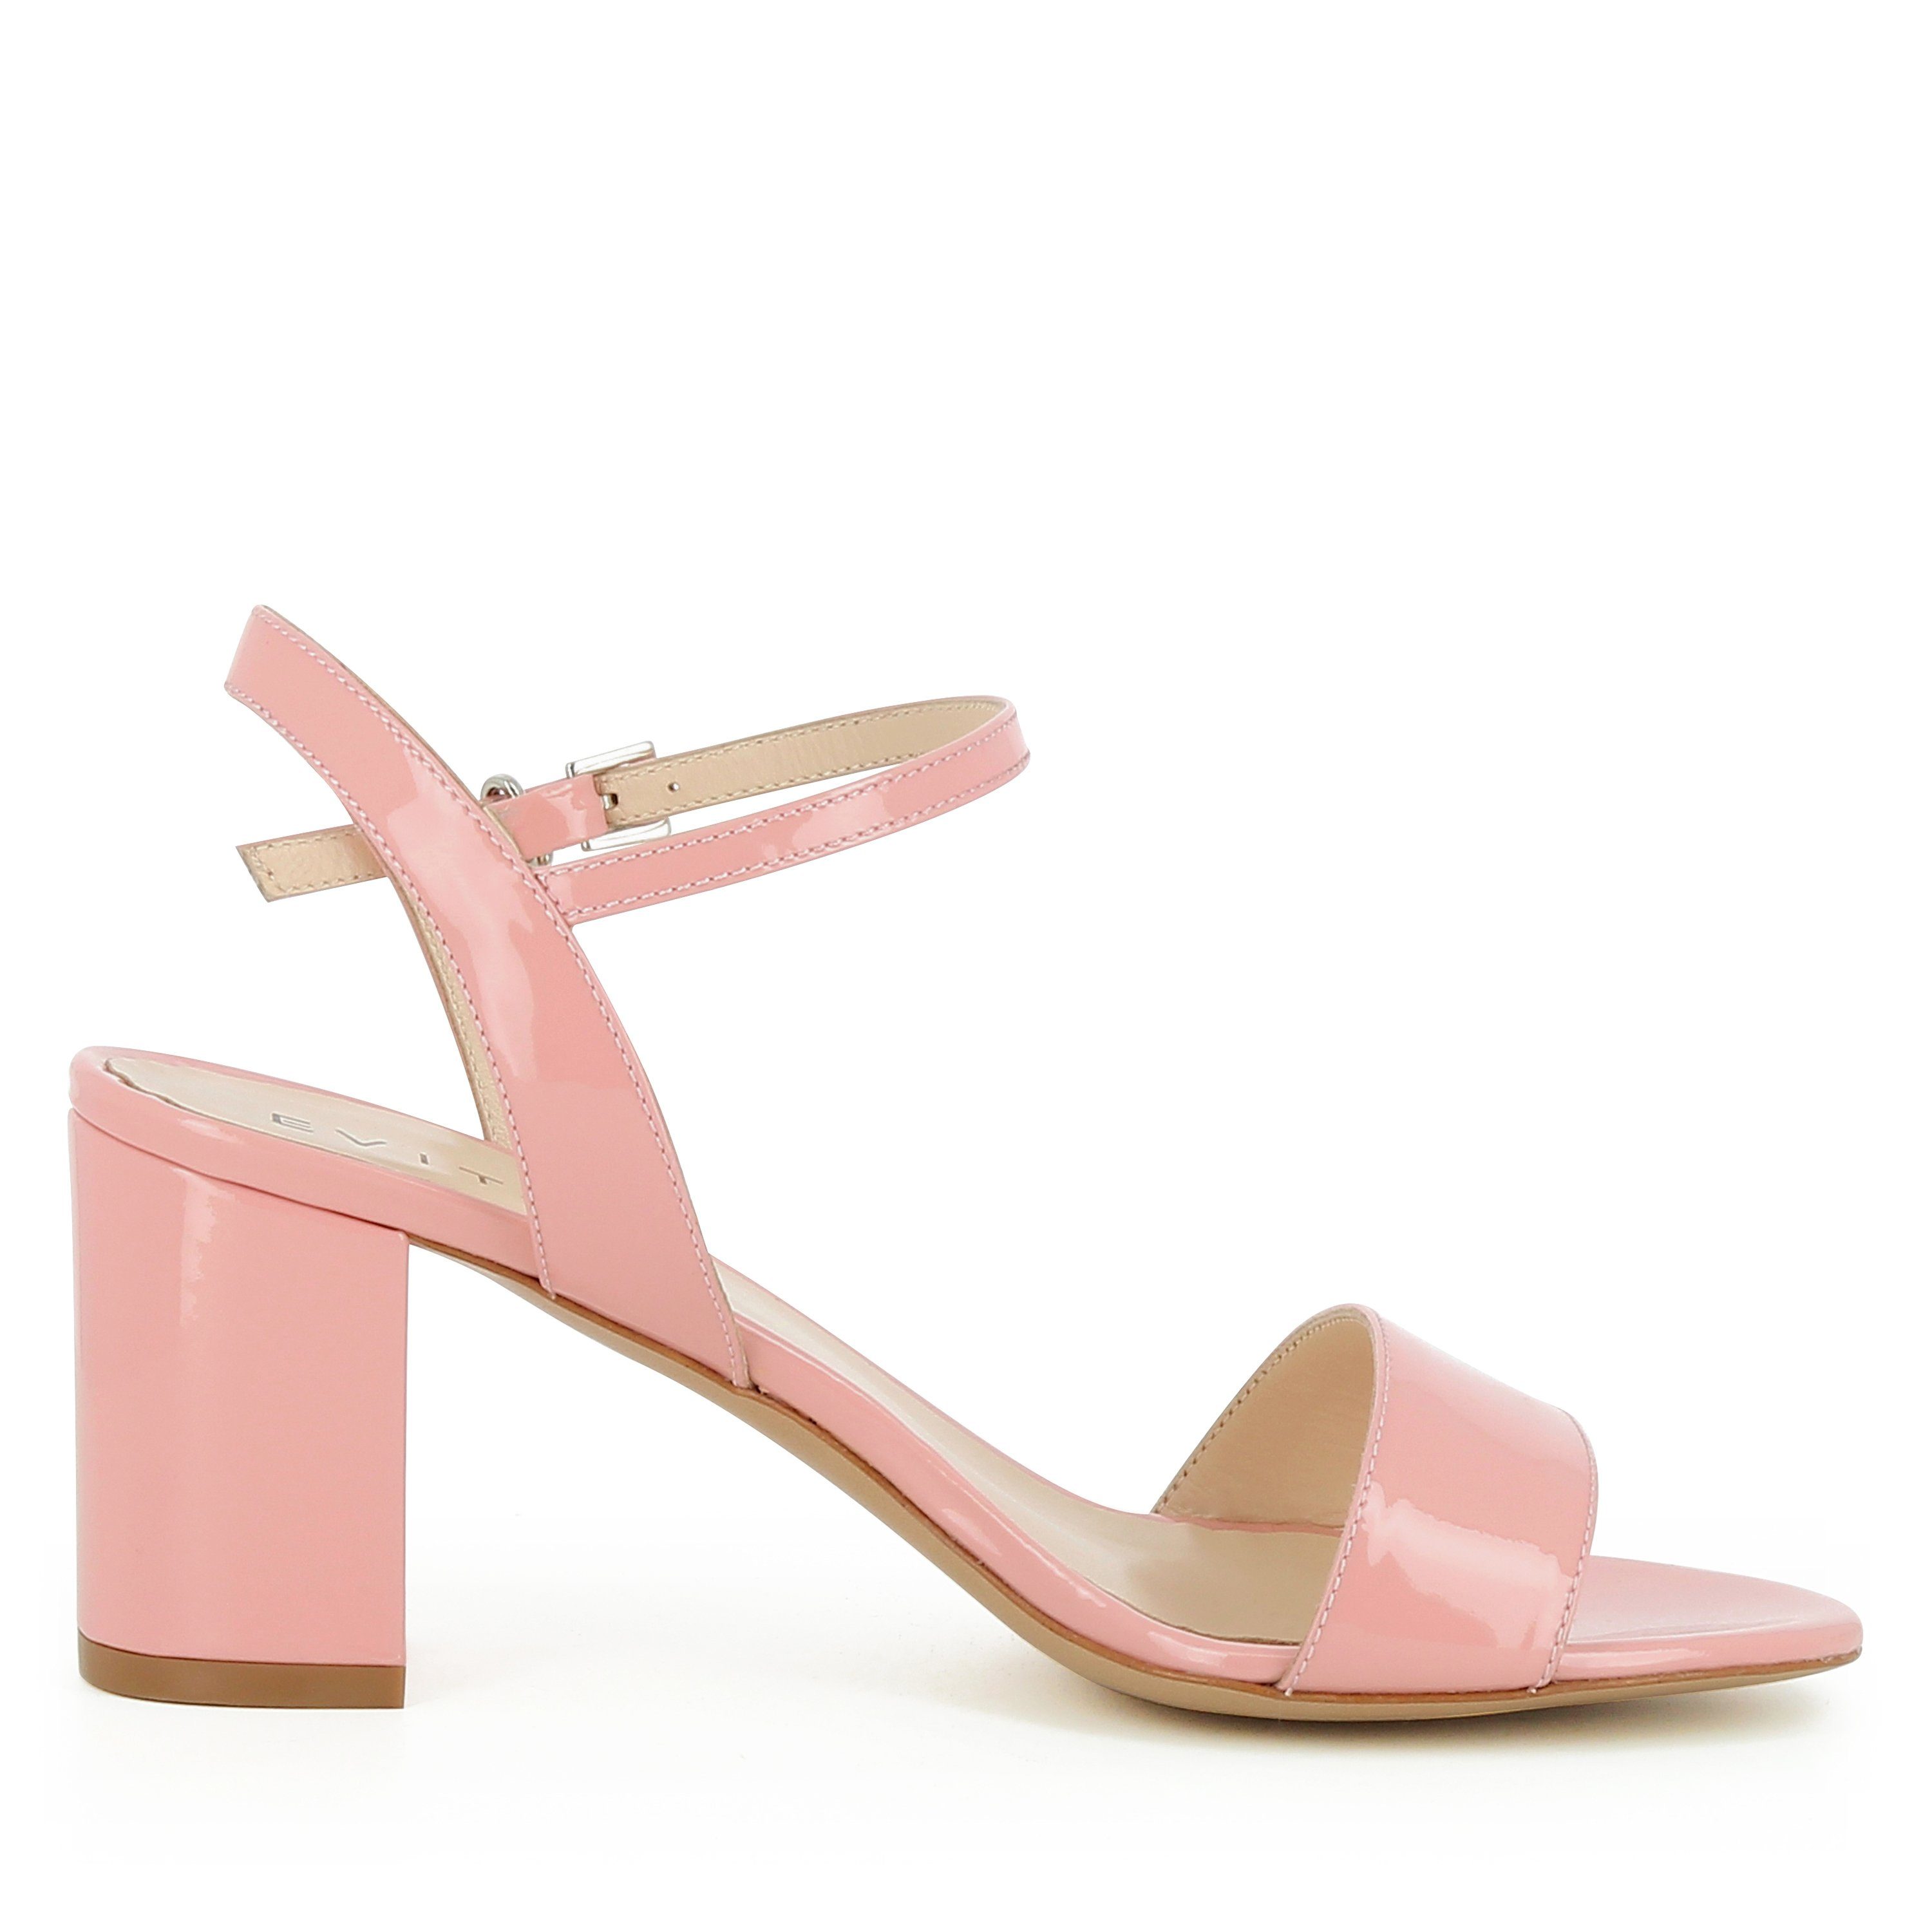 Sandalette AMBRA Evita rosa